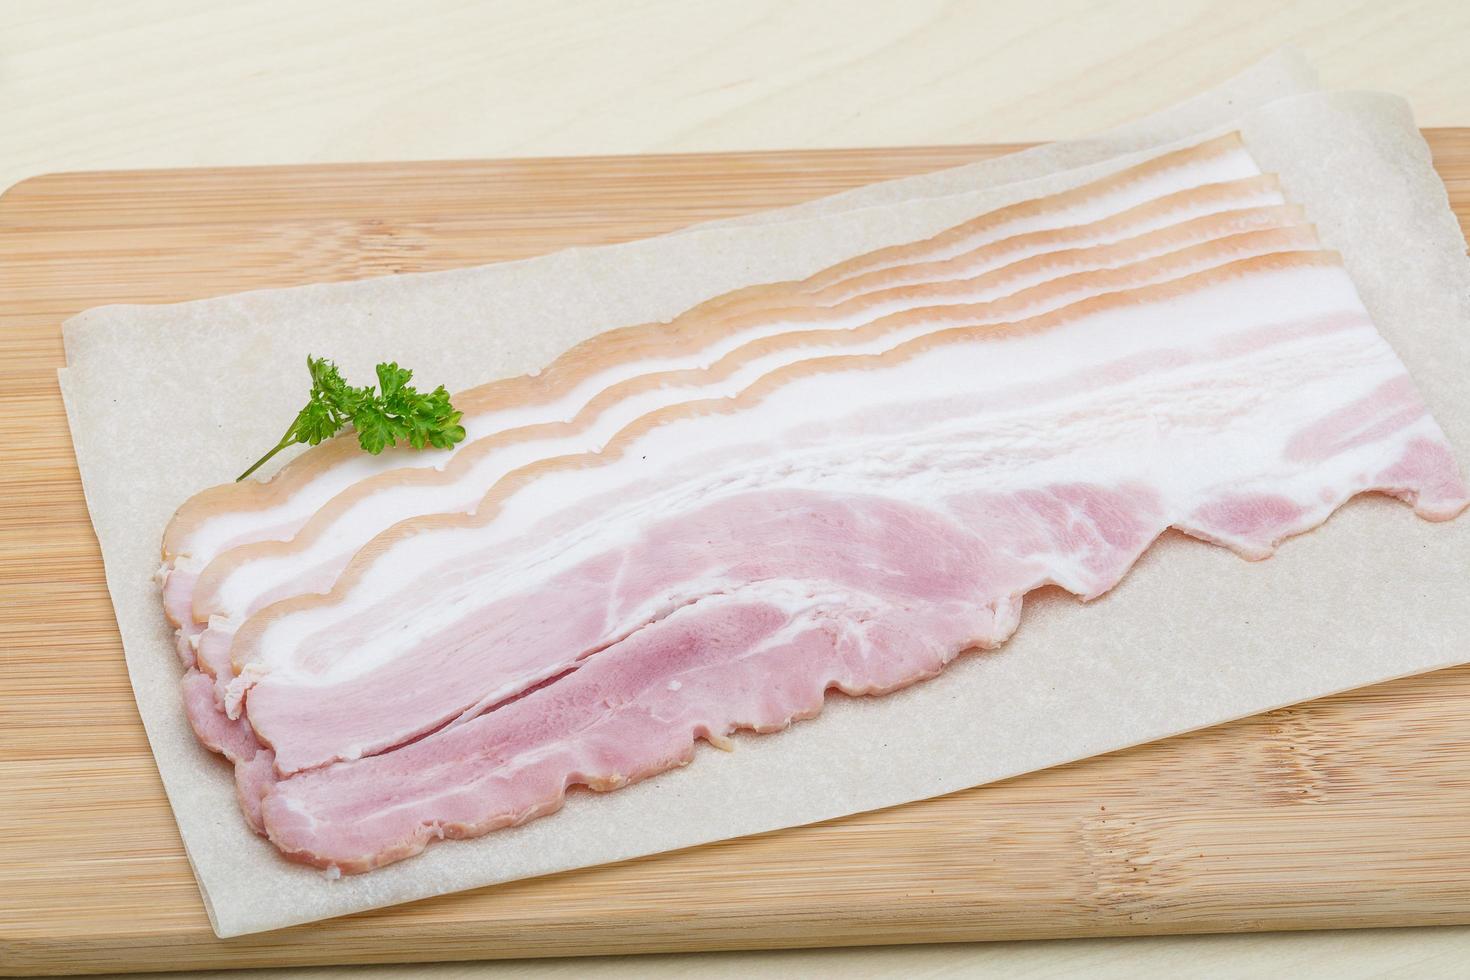 bacon cru na placa de madeira e fundo de madeira foto